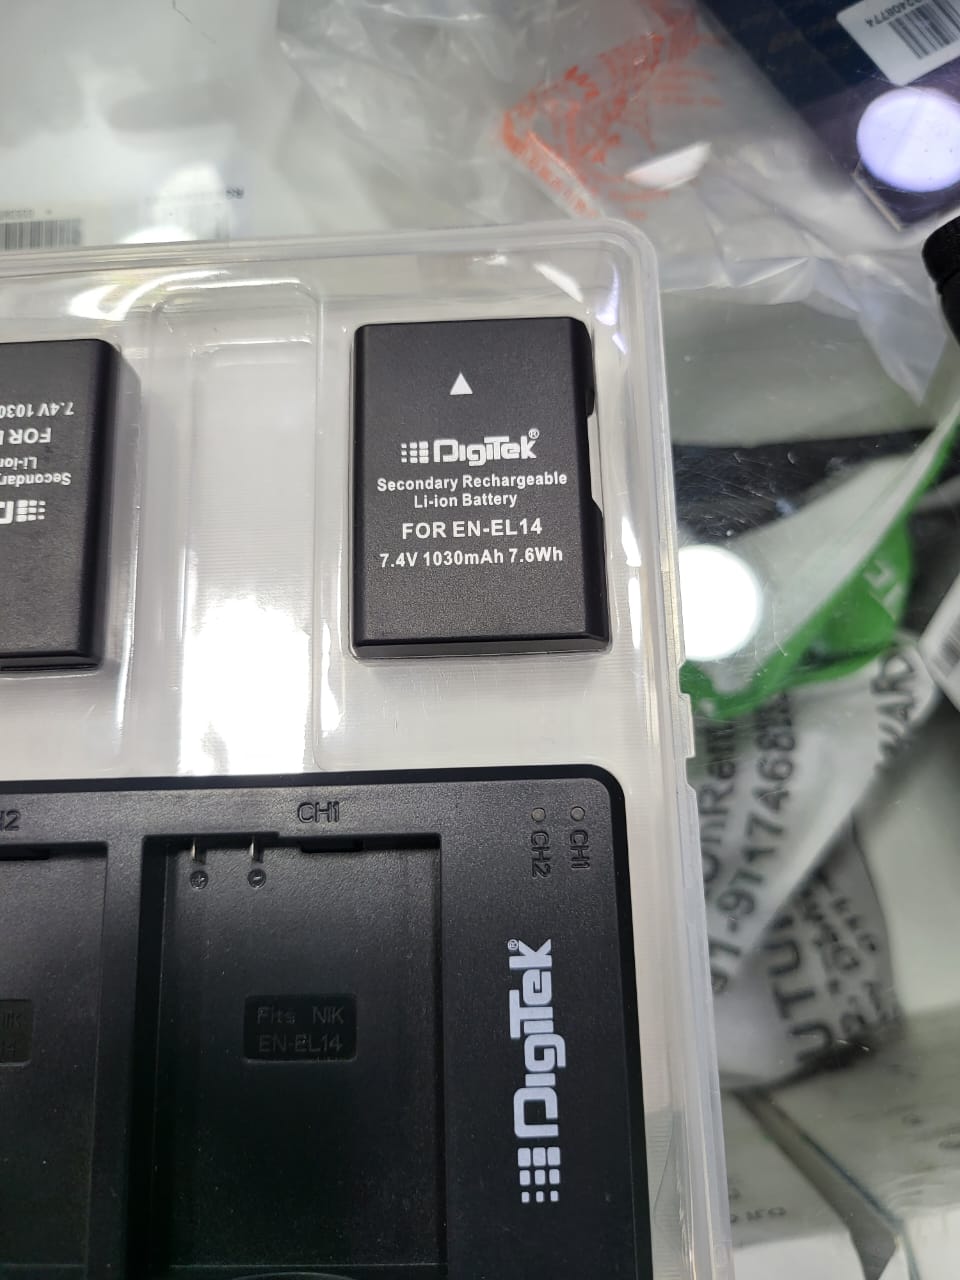 डिजिटल कैमरे के लिए Digitek Enel14 सेकेंडरी रिचार्जेबल बैटरी पैक